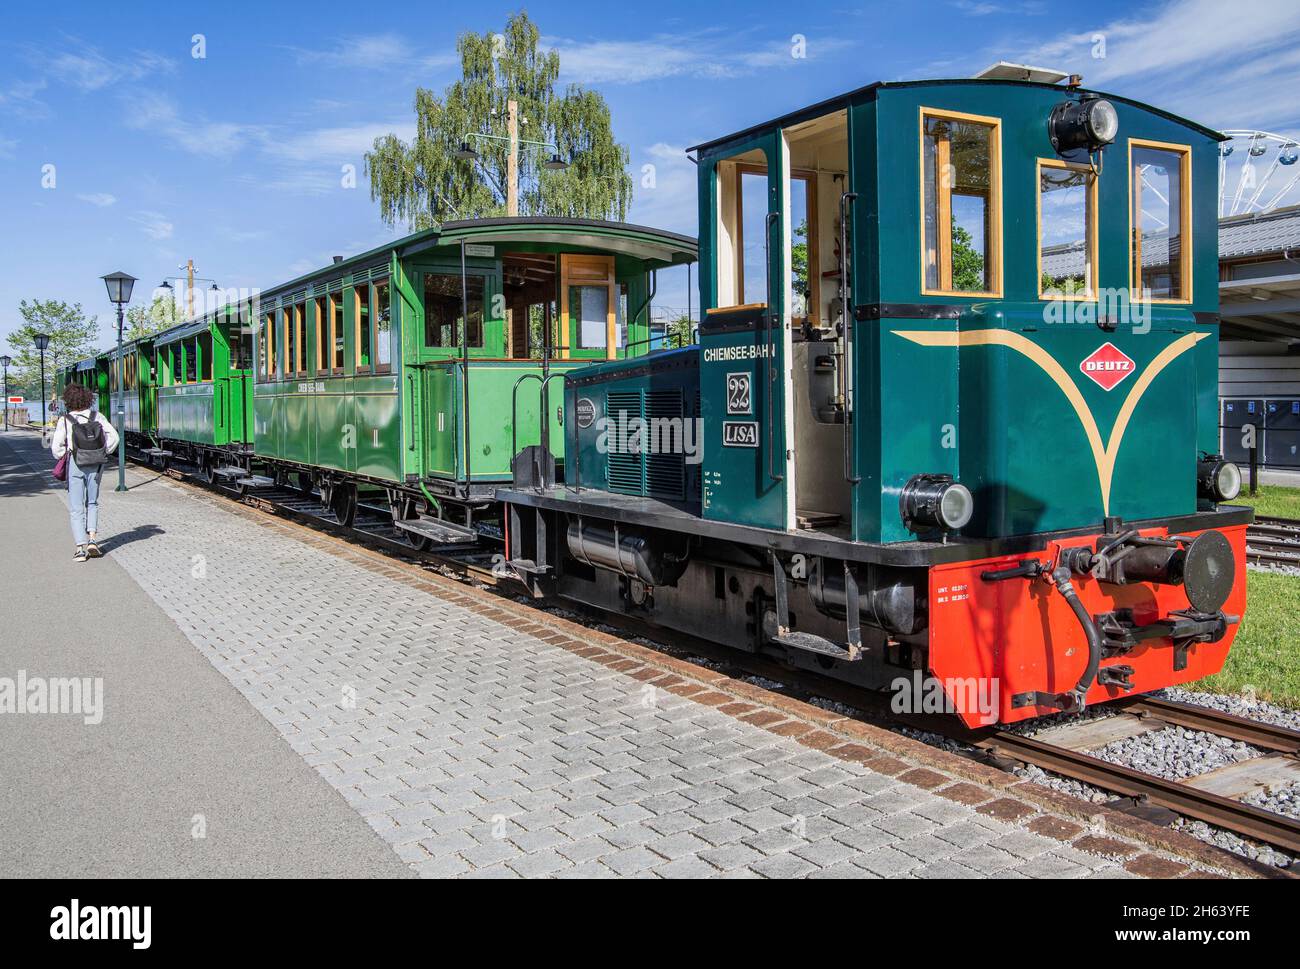 Historischer Zug zum Pier, prien, chiemsee, chiemgau, oberbayern, bayern, deutschland Stockfoto